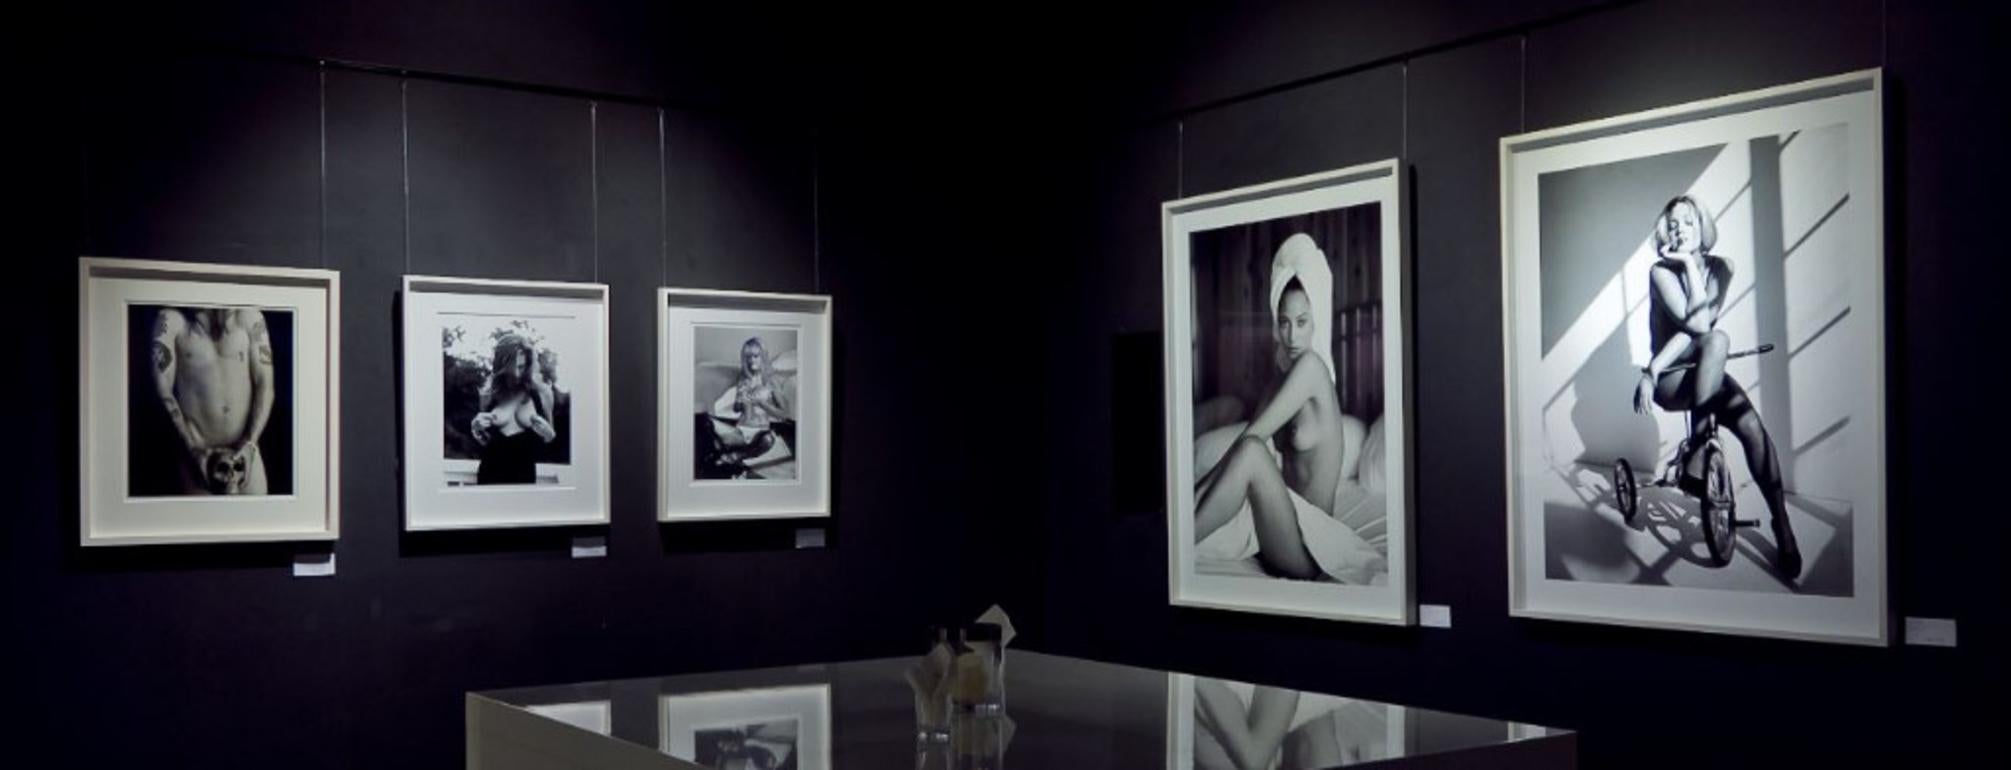 Cindy Crawford – Schwarz-Weiß-Nacktporträt des Supermodels, das auf einem Felsen sitzt – Photograph von Sante D´ Orazio